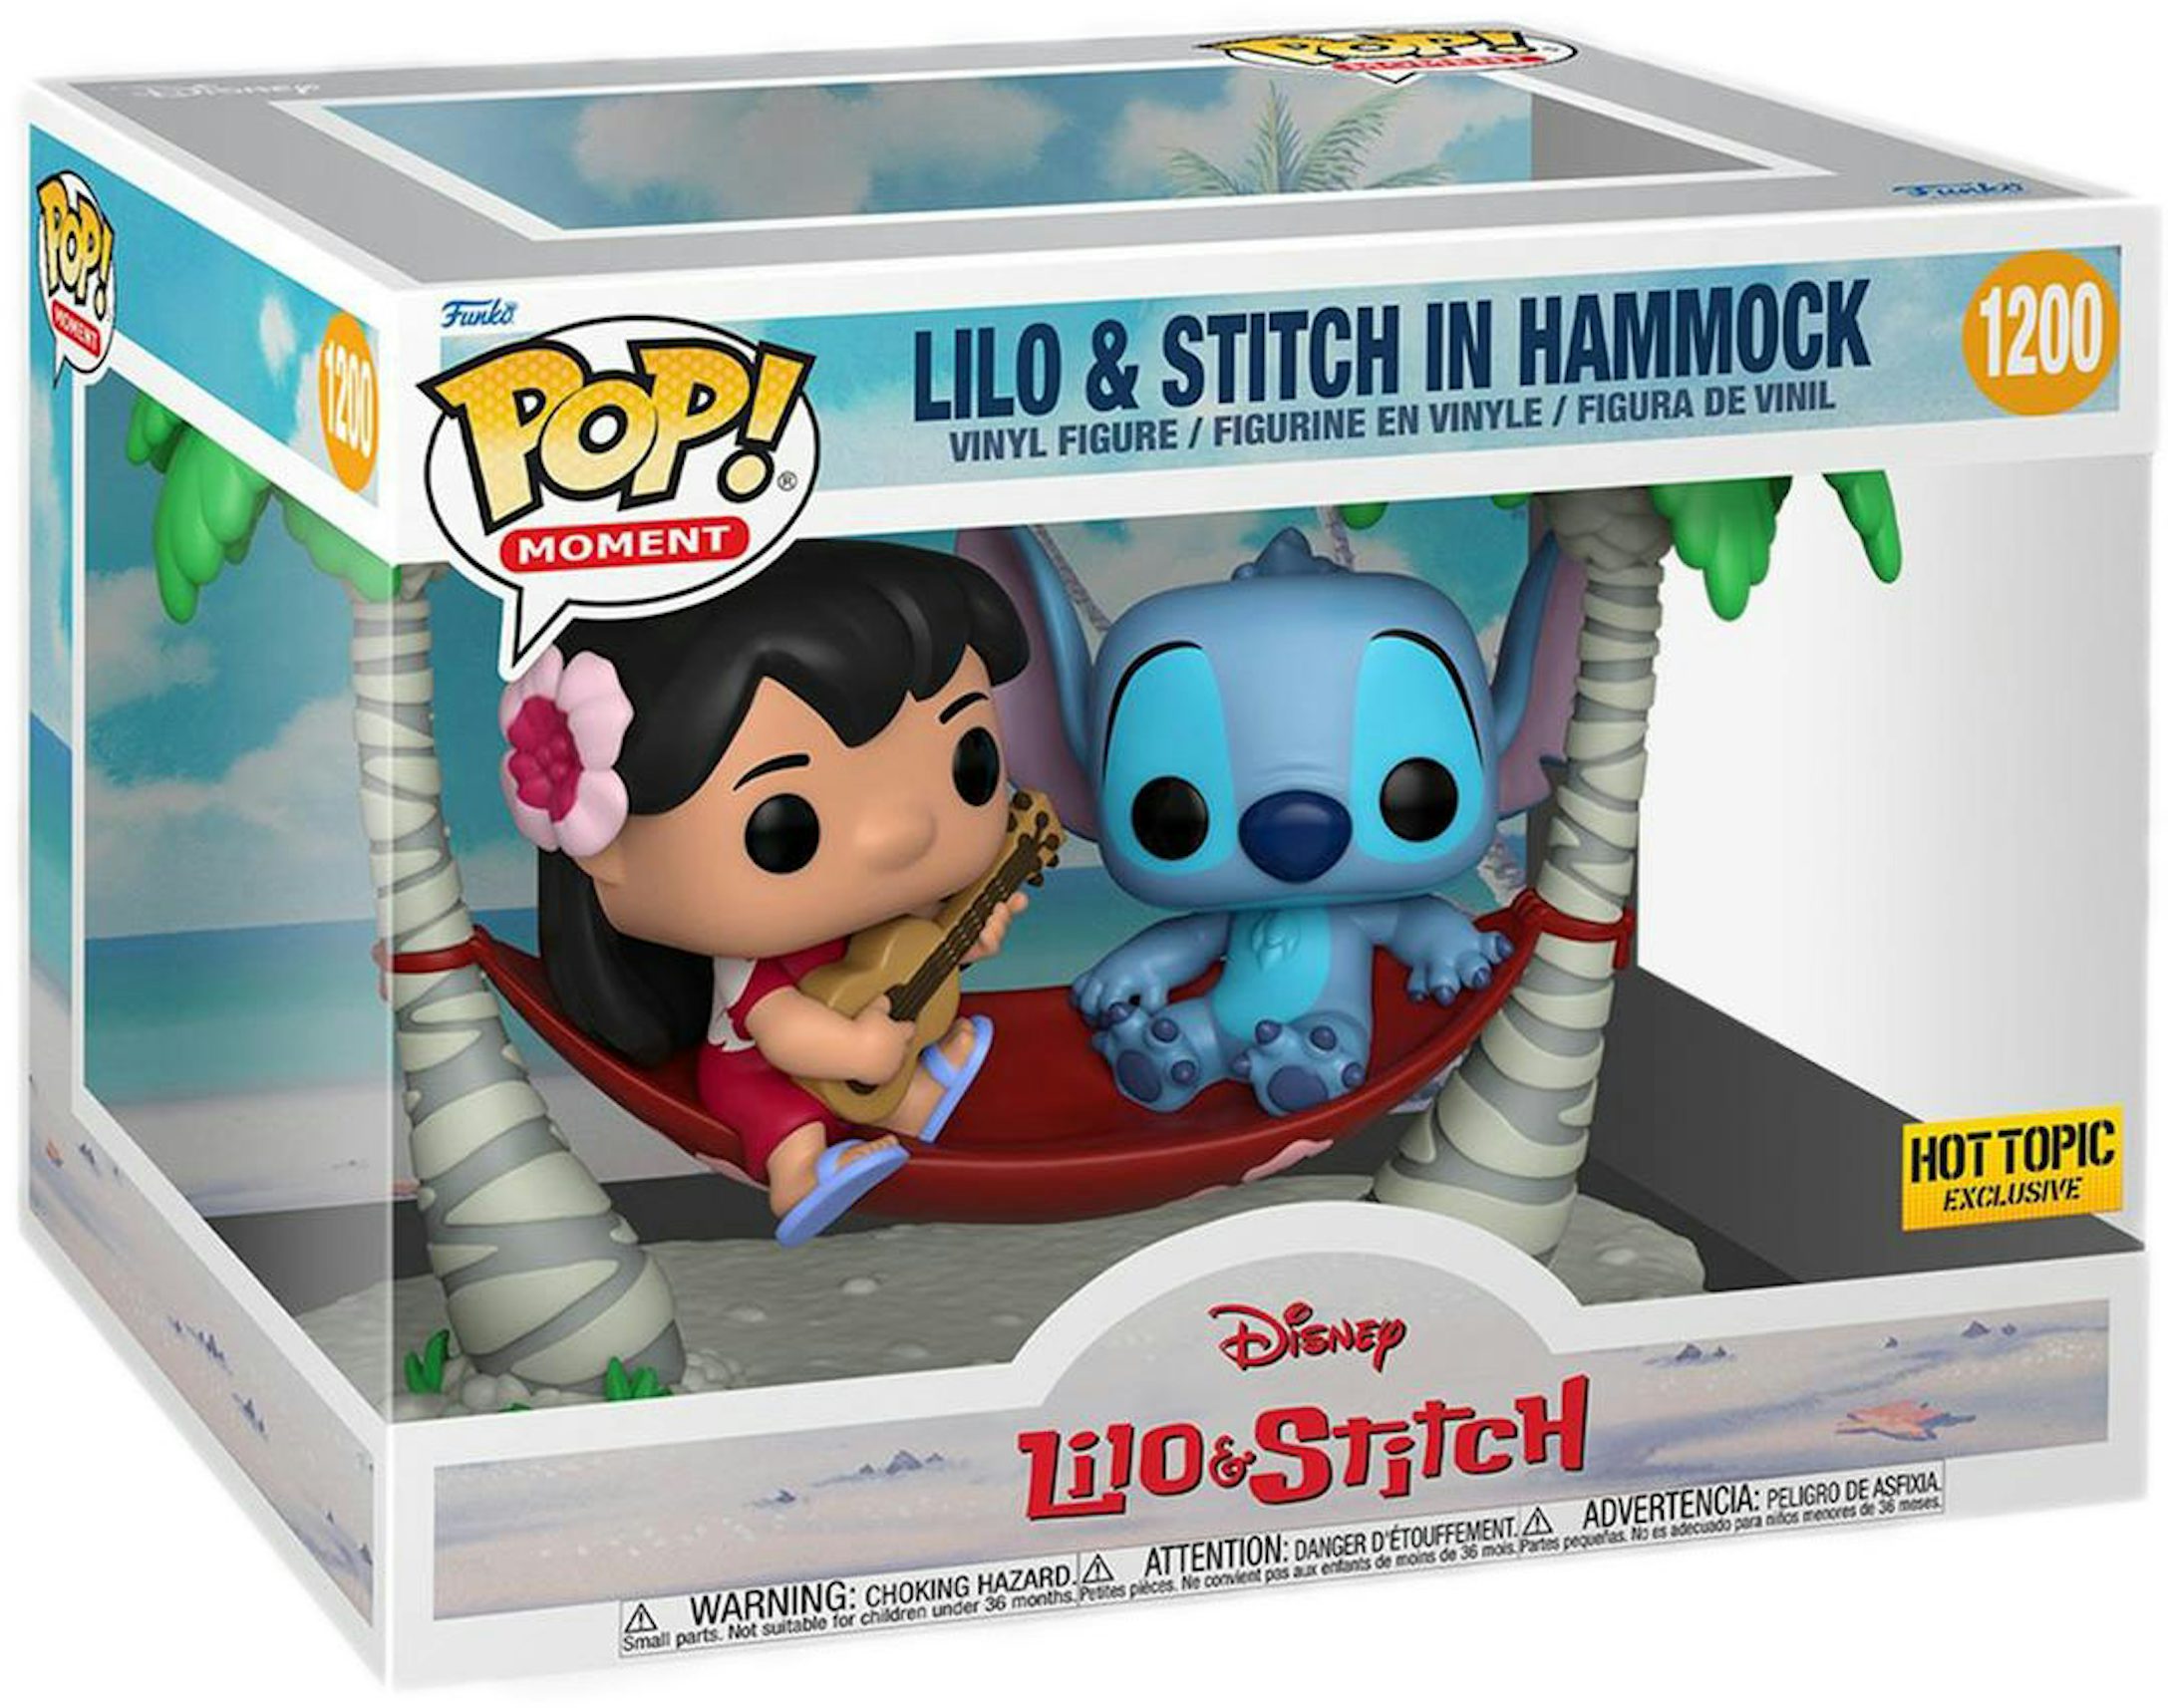 Funko Pop! Moment Disney Lilo & Stitch (Lilo & Stitch in Hammock) Hot Topic  Exclusive Figure #1200 - US